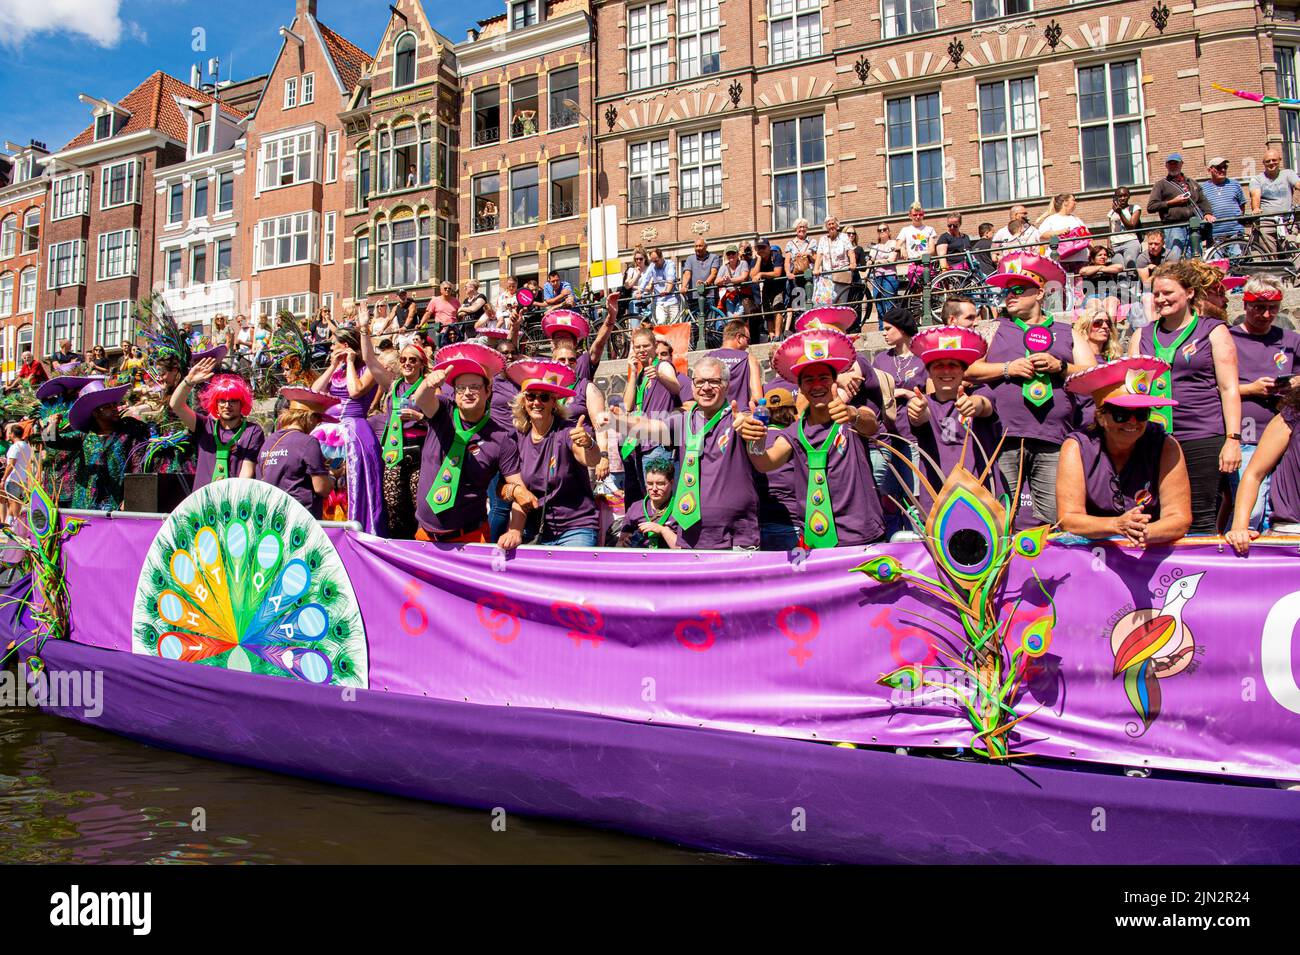 Die Menschen genießen die Grachtenparade durch die Grachten von Amsterdam während der Pride 2022. Die Parade ist die Hauptereignis von Pride Amsterdam 2022, einem Festival für die LGBTQ+ Gemeinschaft, mit dem diesjährigen Thema My Gender, My Pride. (Foto von DPPA/Sipa USA) Stockfoto